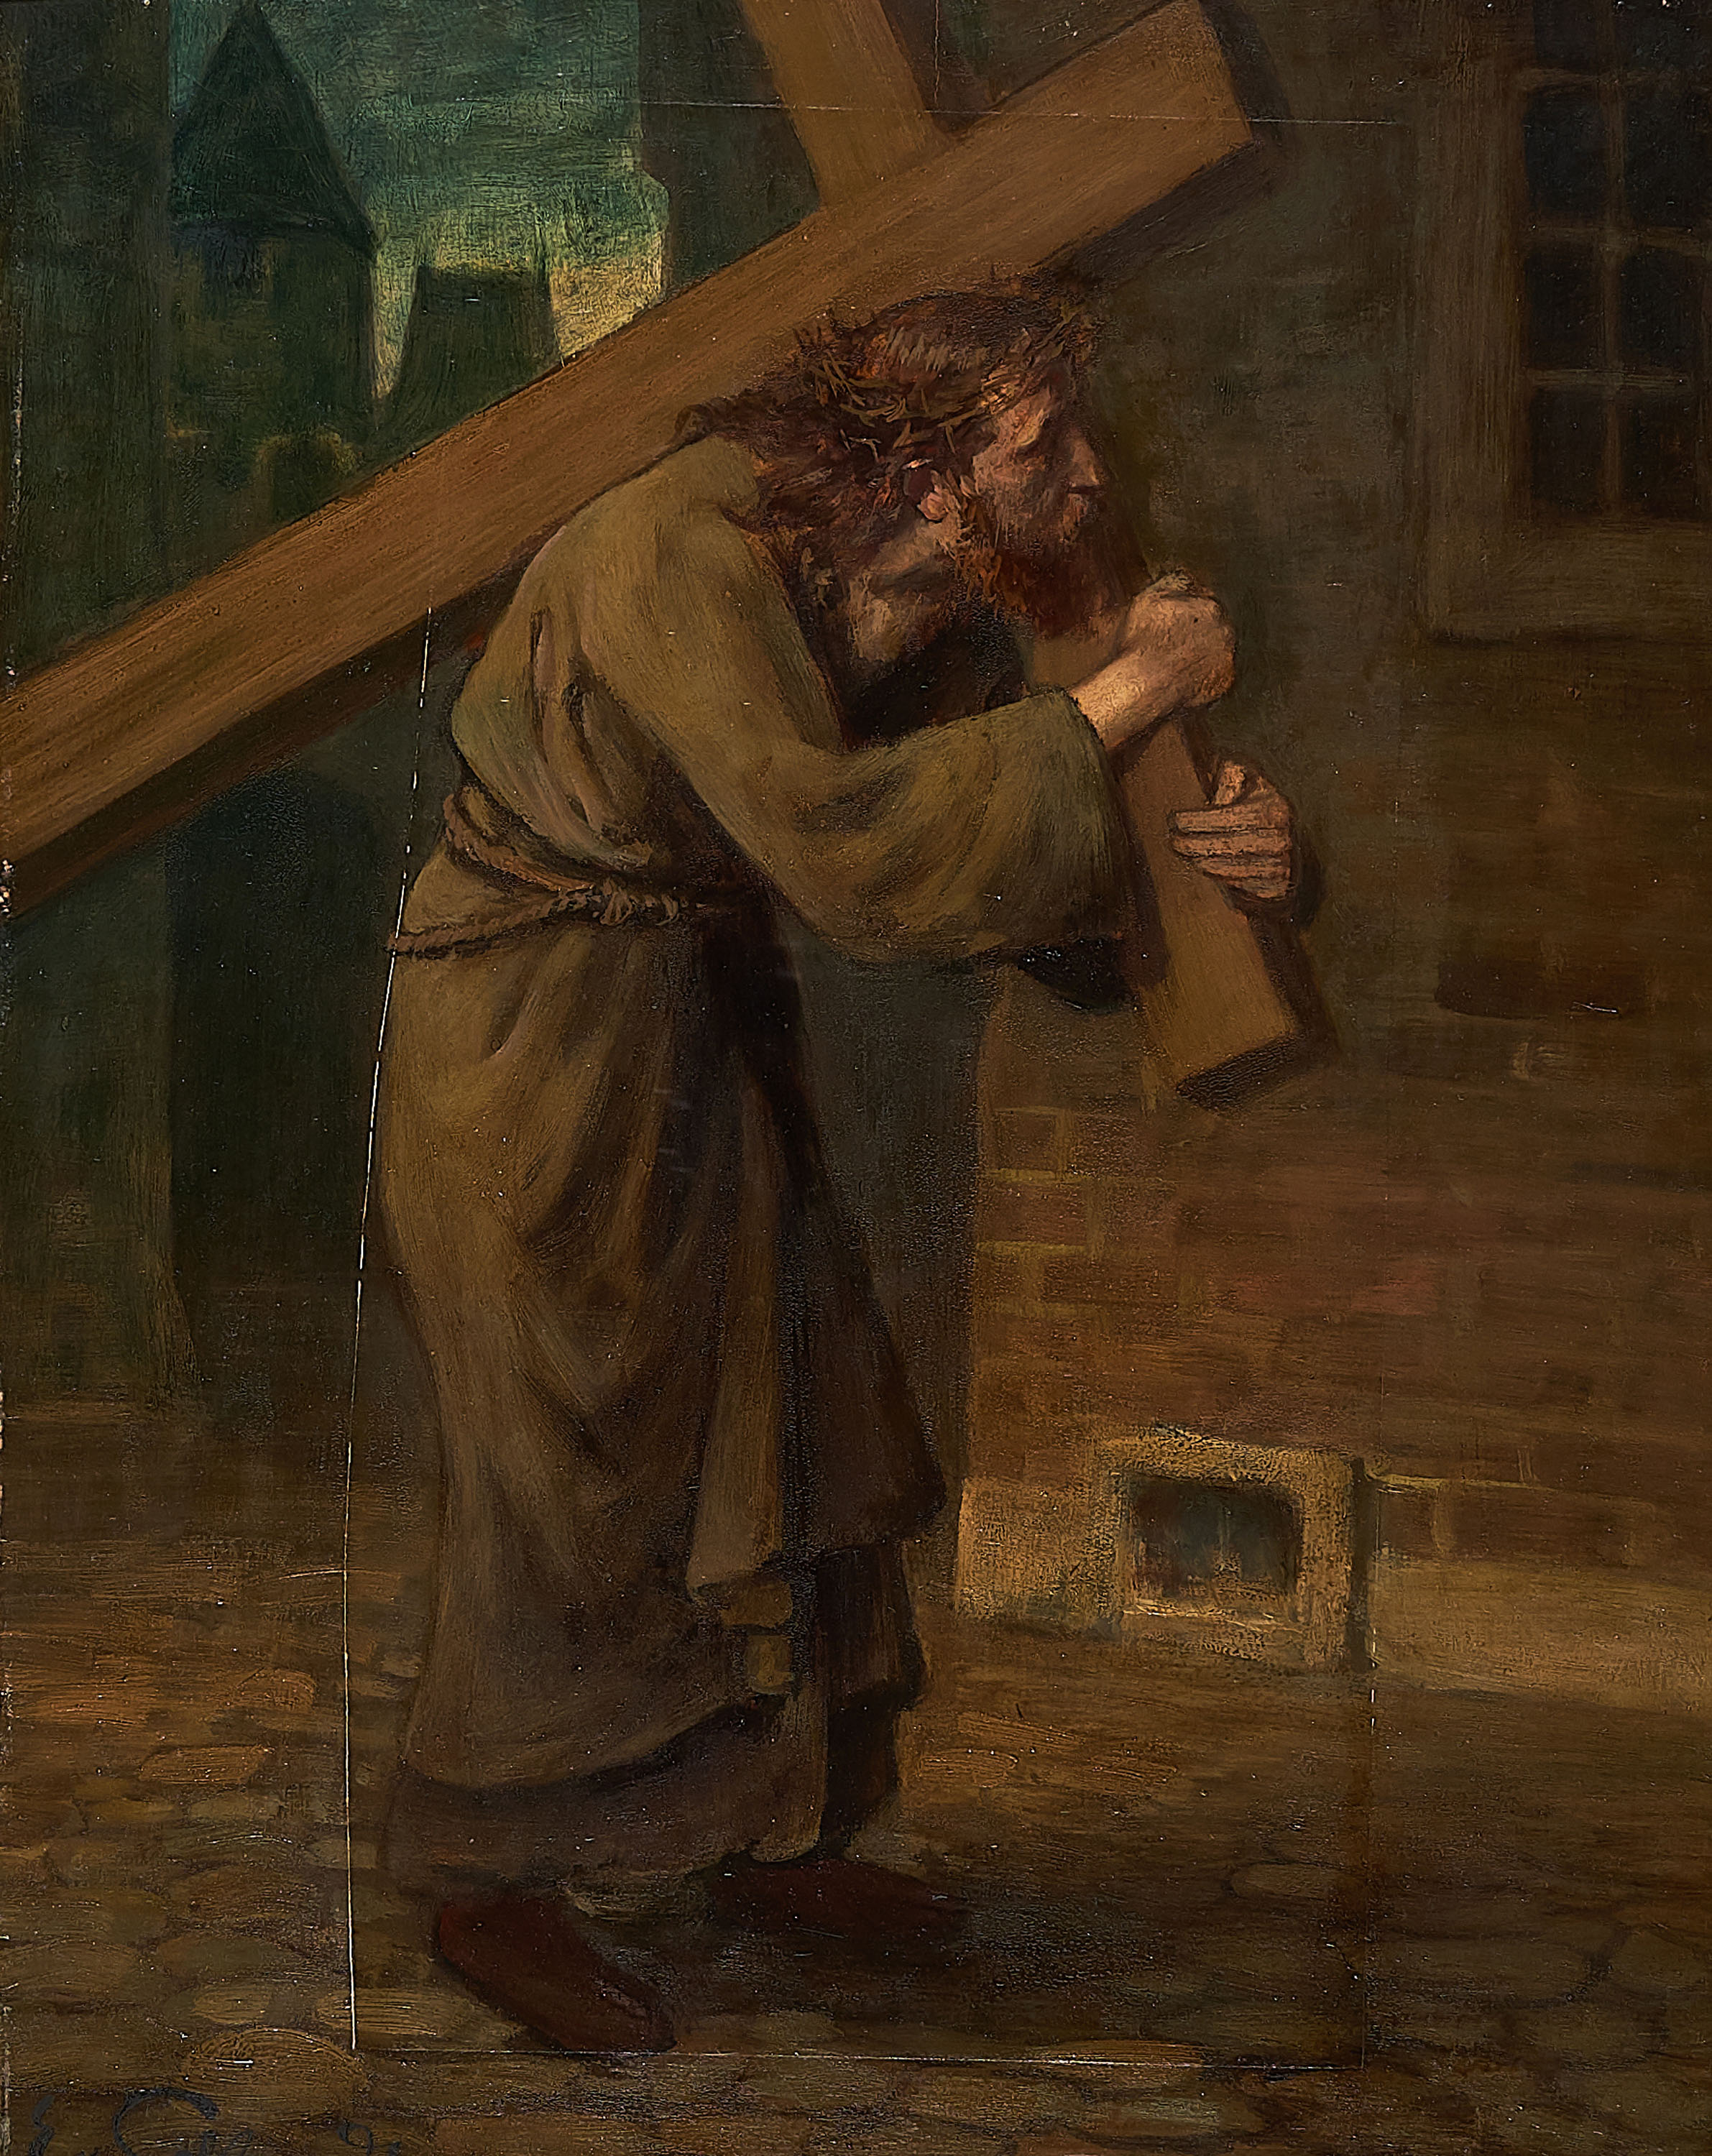 Eduard von Gebhardt - Kreuztragender Christus, 300007-21, Van Ham Kunstauktionen